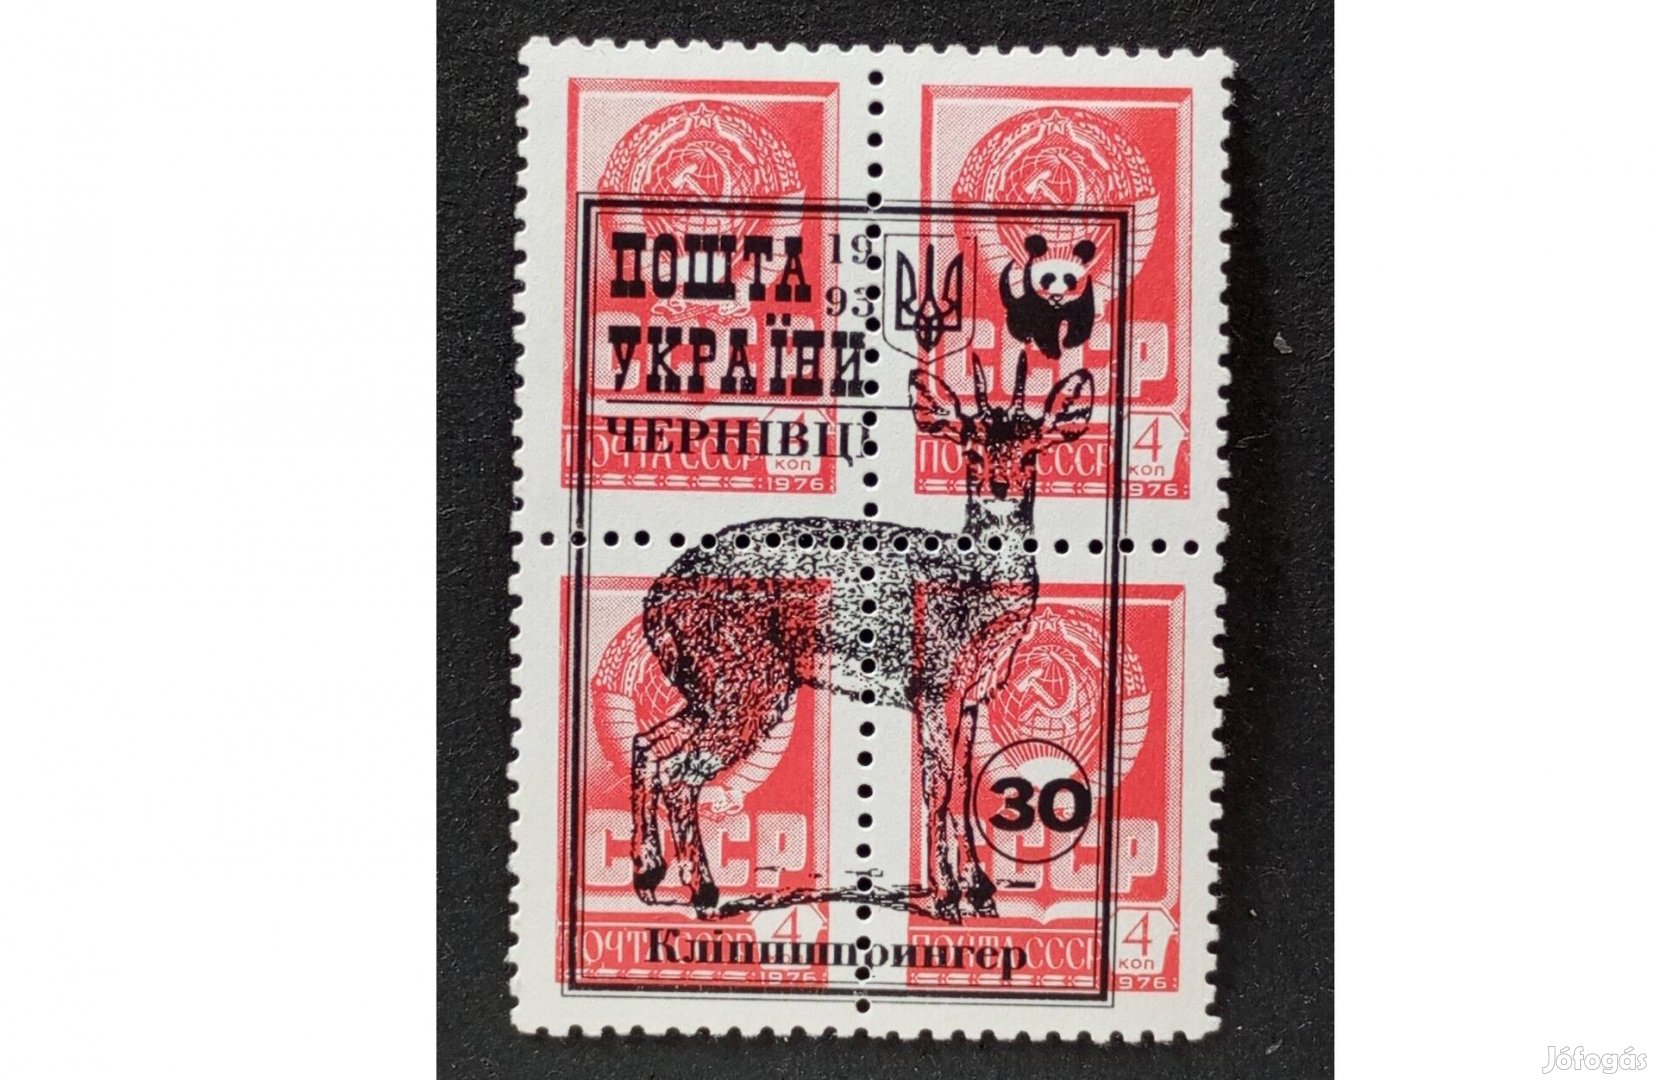 1976-os végleges kiadás 4 kop postatiszta bélyeg 4 egyben Ukrajna